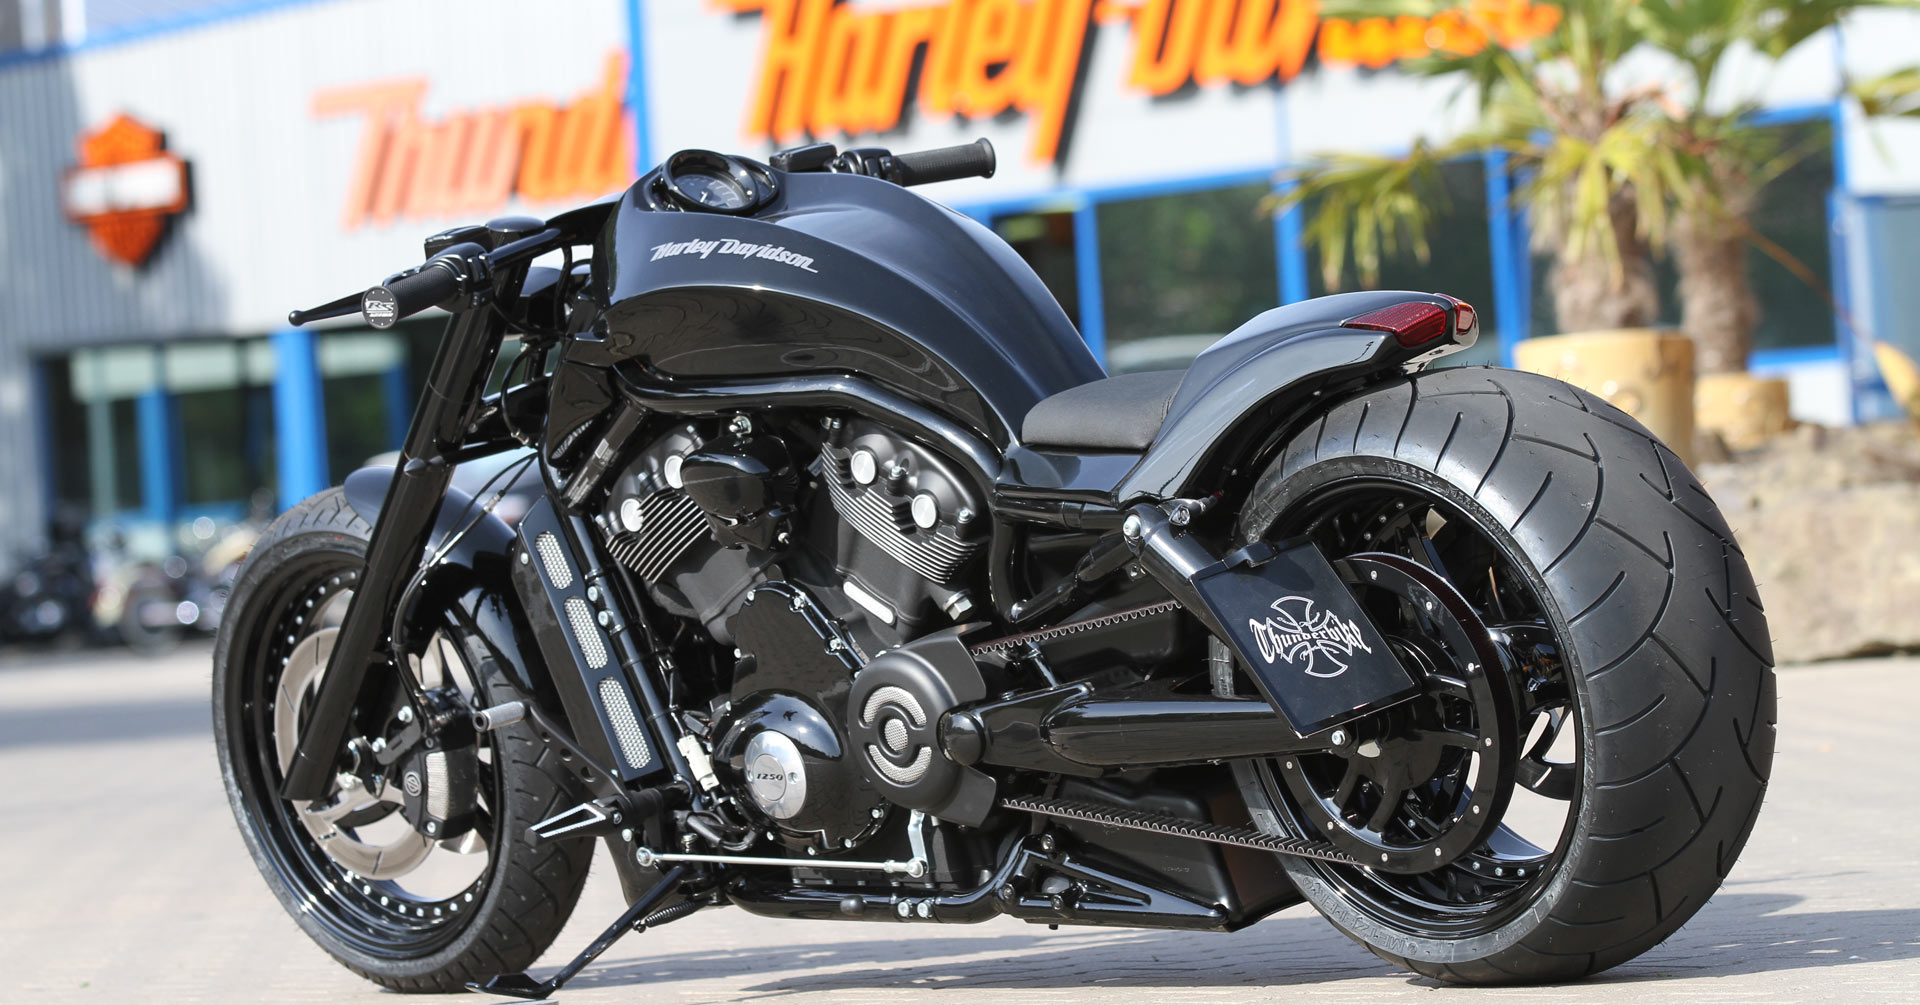 Customized Harley-Davidson V-Rod / VRSC Motorcycles by Thunderbike